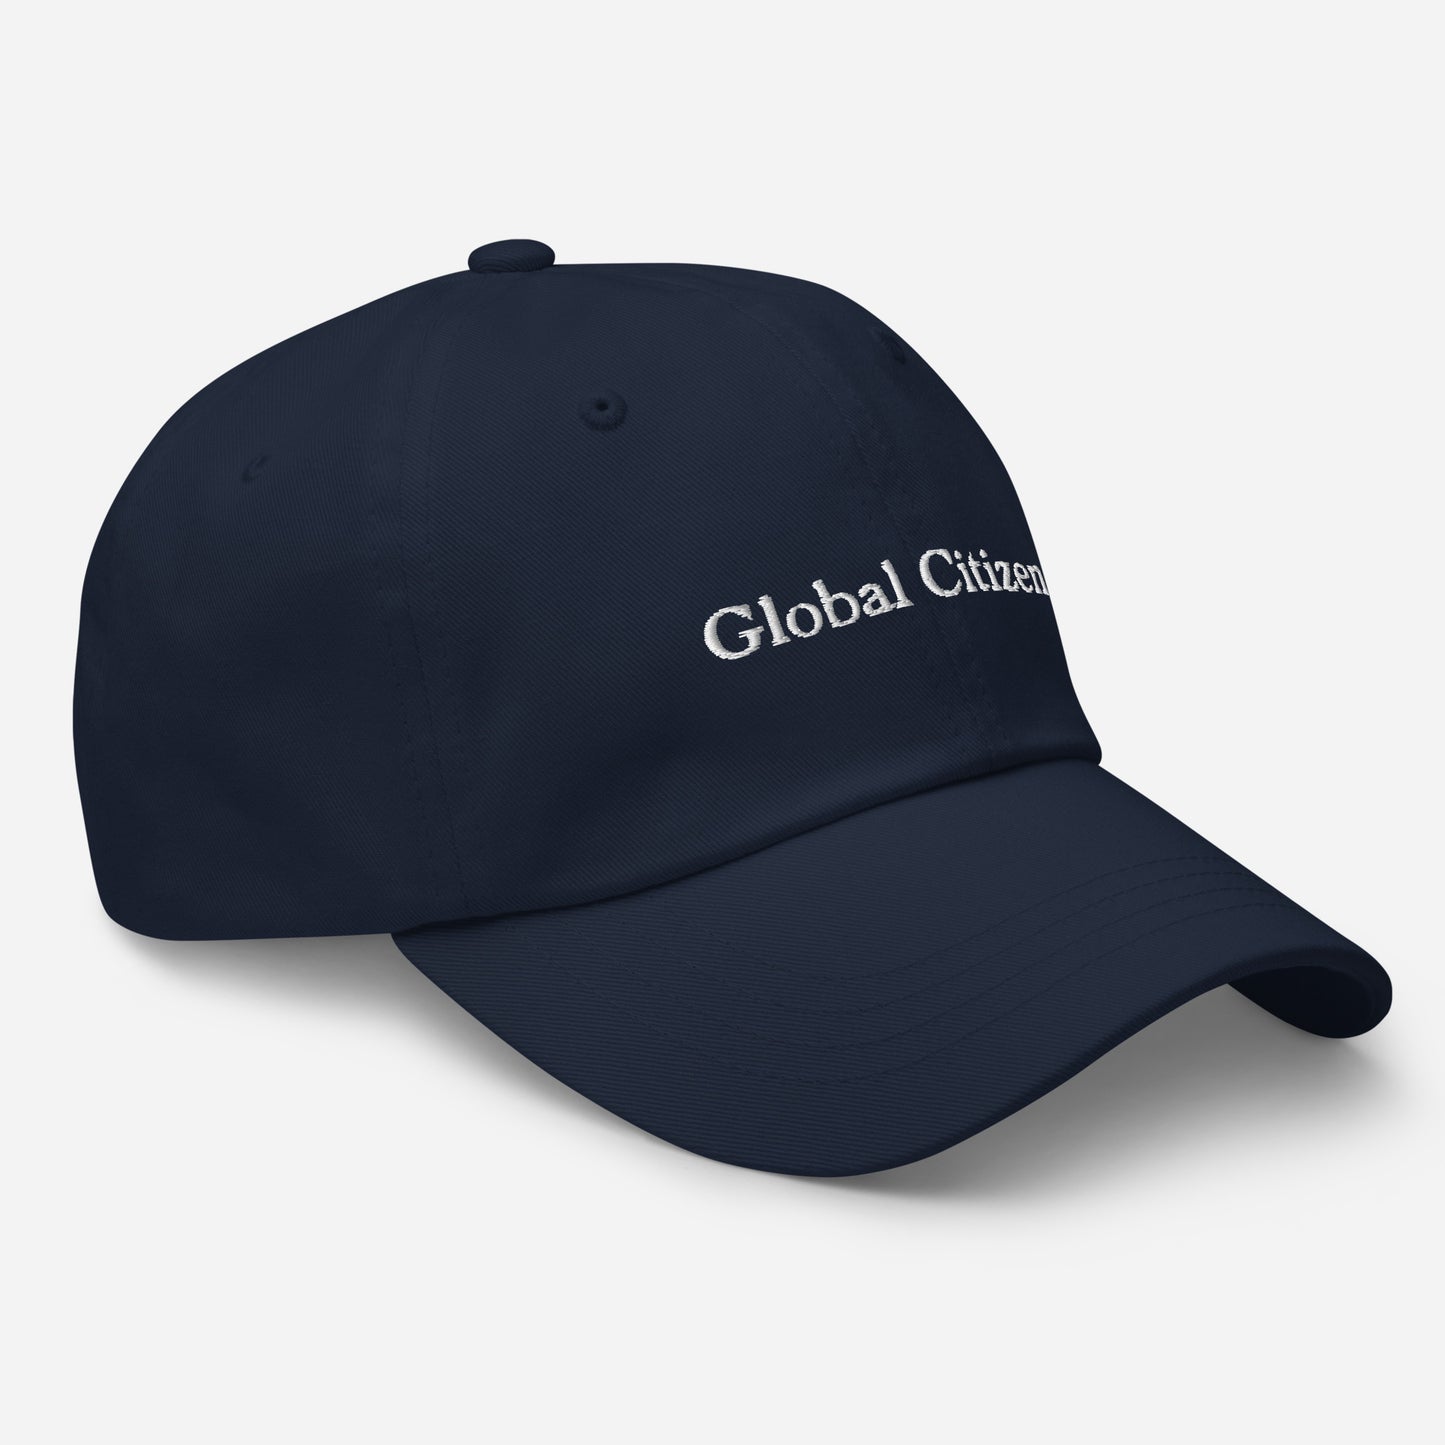 Global Citizen Baseball Cap